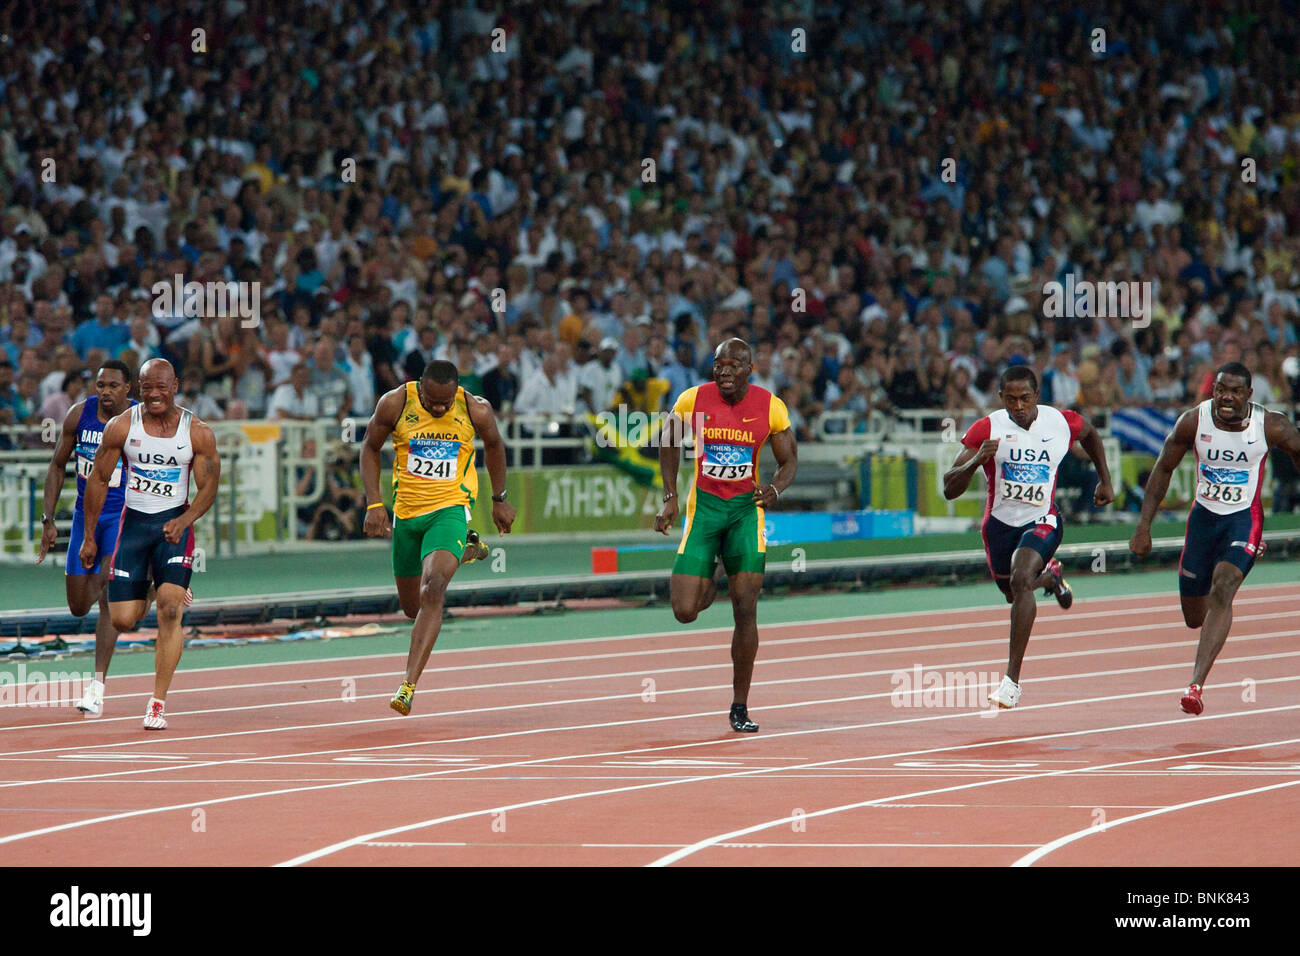 Justin Gatlin (USA) [rechtsextremen] gewinnen die Männer 100m bei den Olympischen Sommerspiele 2004, Athen, Griechenland. Stockfoto